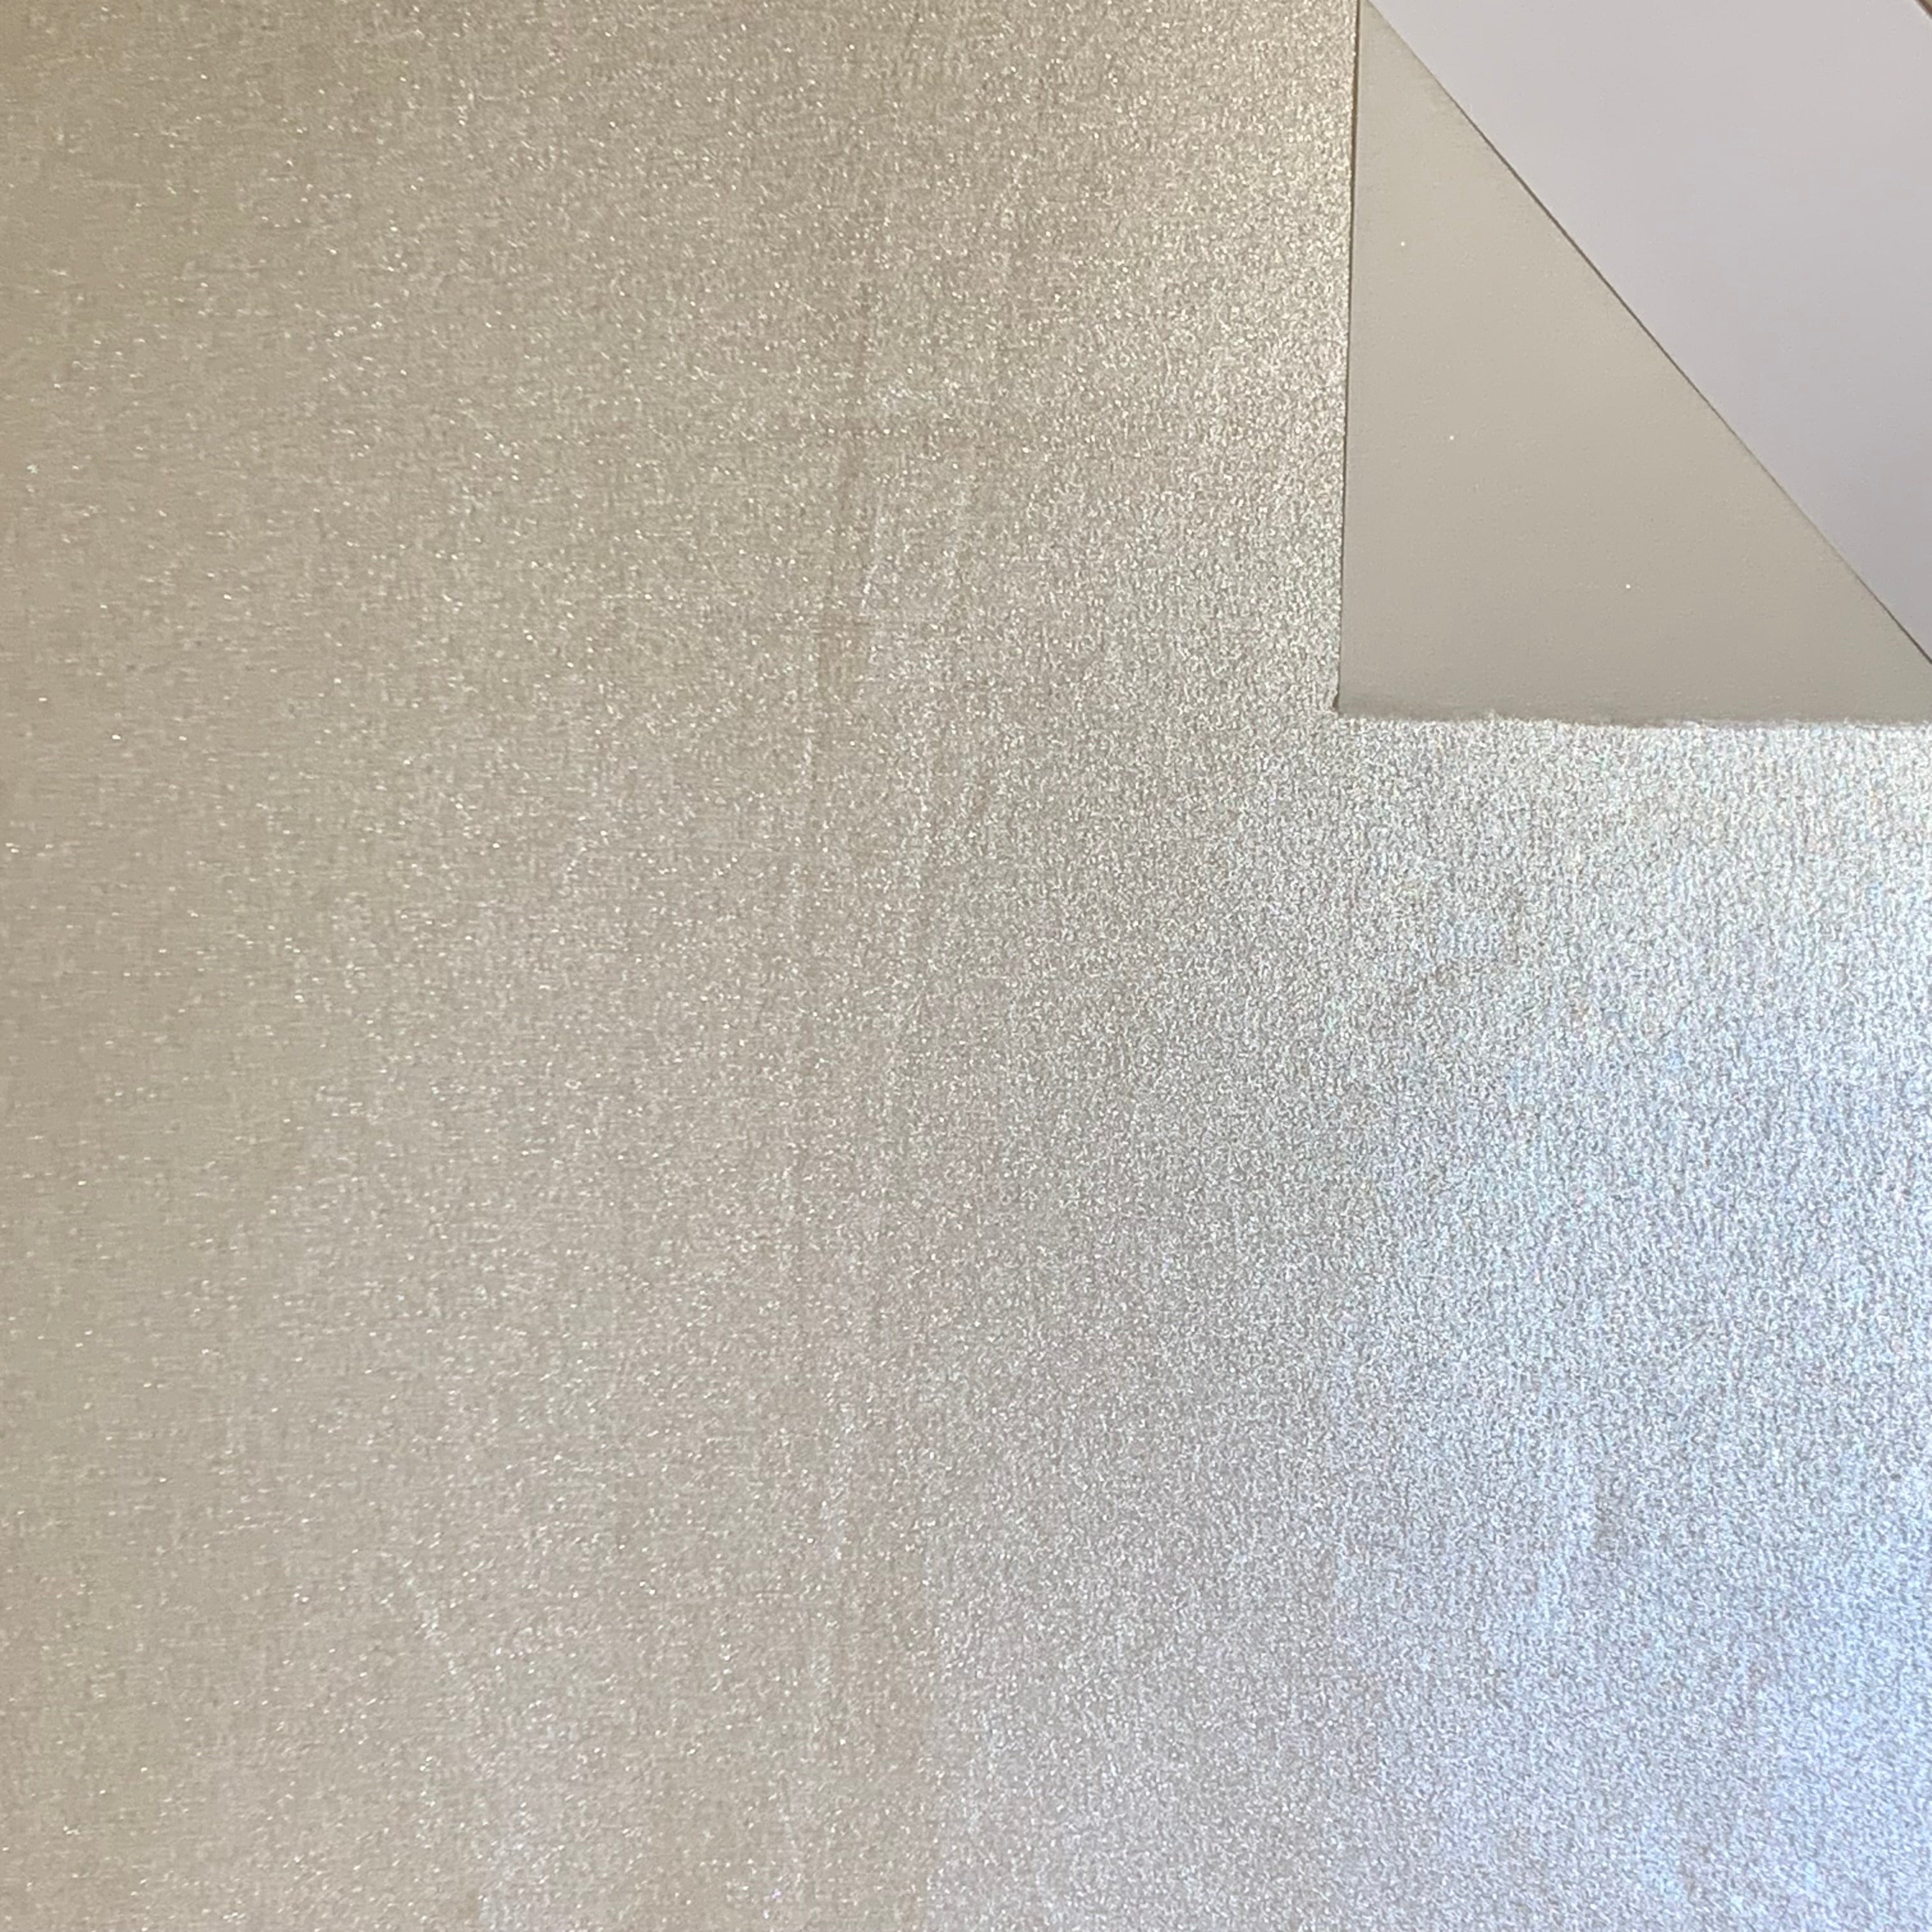 Paper Tree Tissue Foil 24"(60 cm) Square Single Sheet